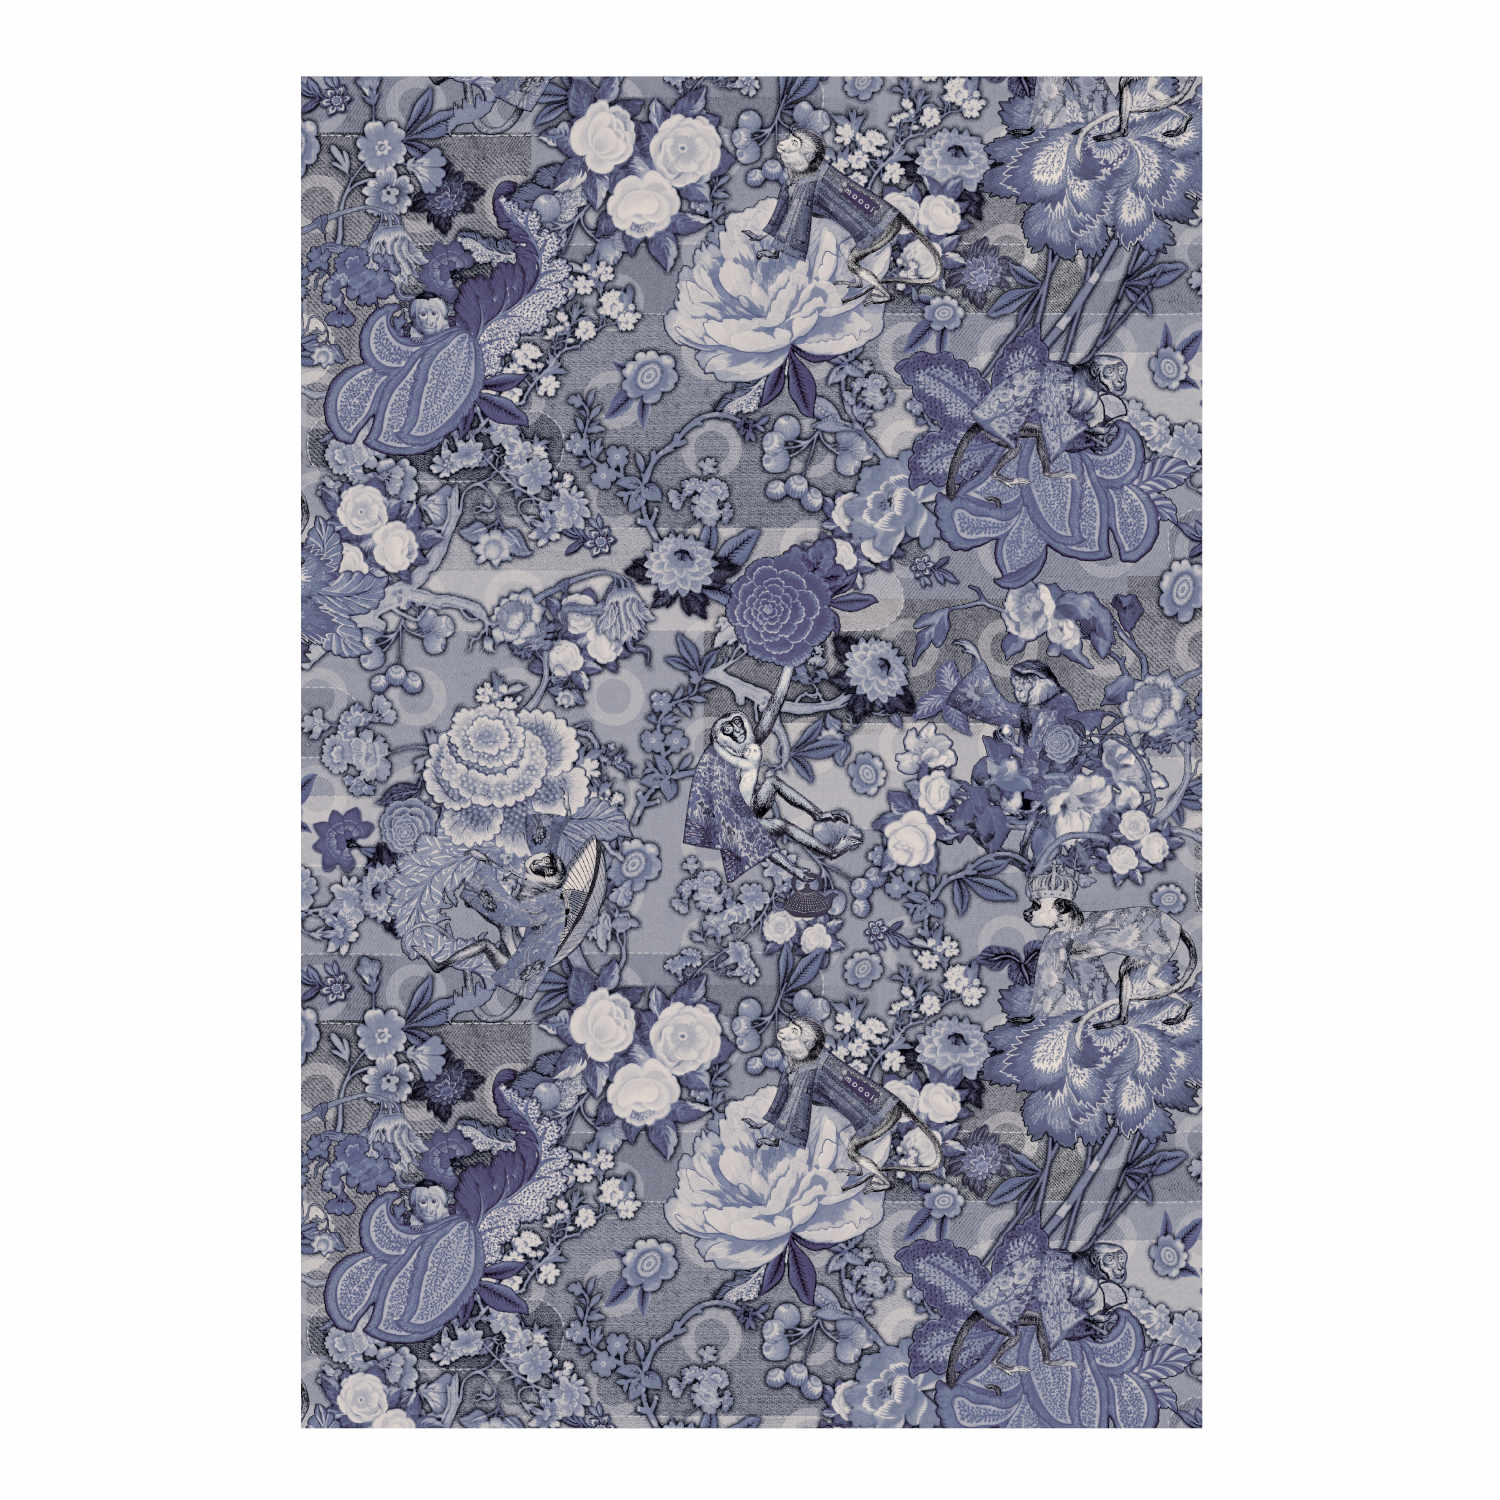 Rendezvous Tokyo Blue Teppich, Farbe ming blue, Grösse 200 x 300 cm von Moooi Carpets